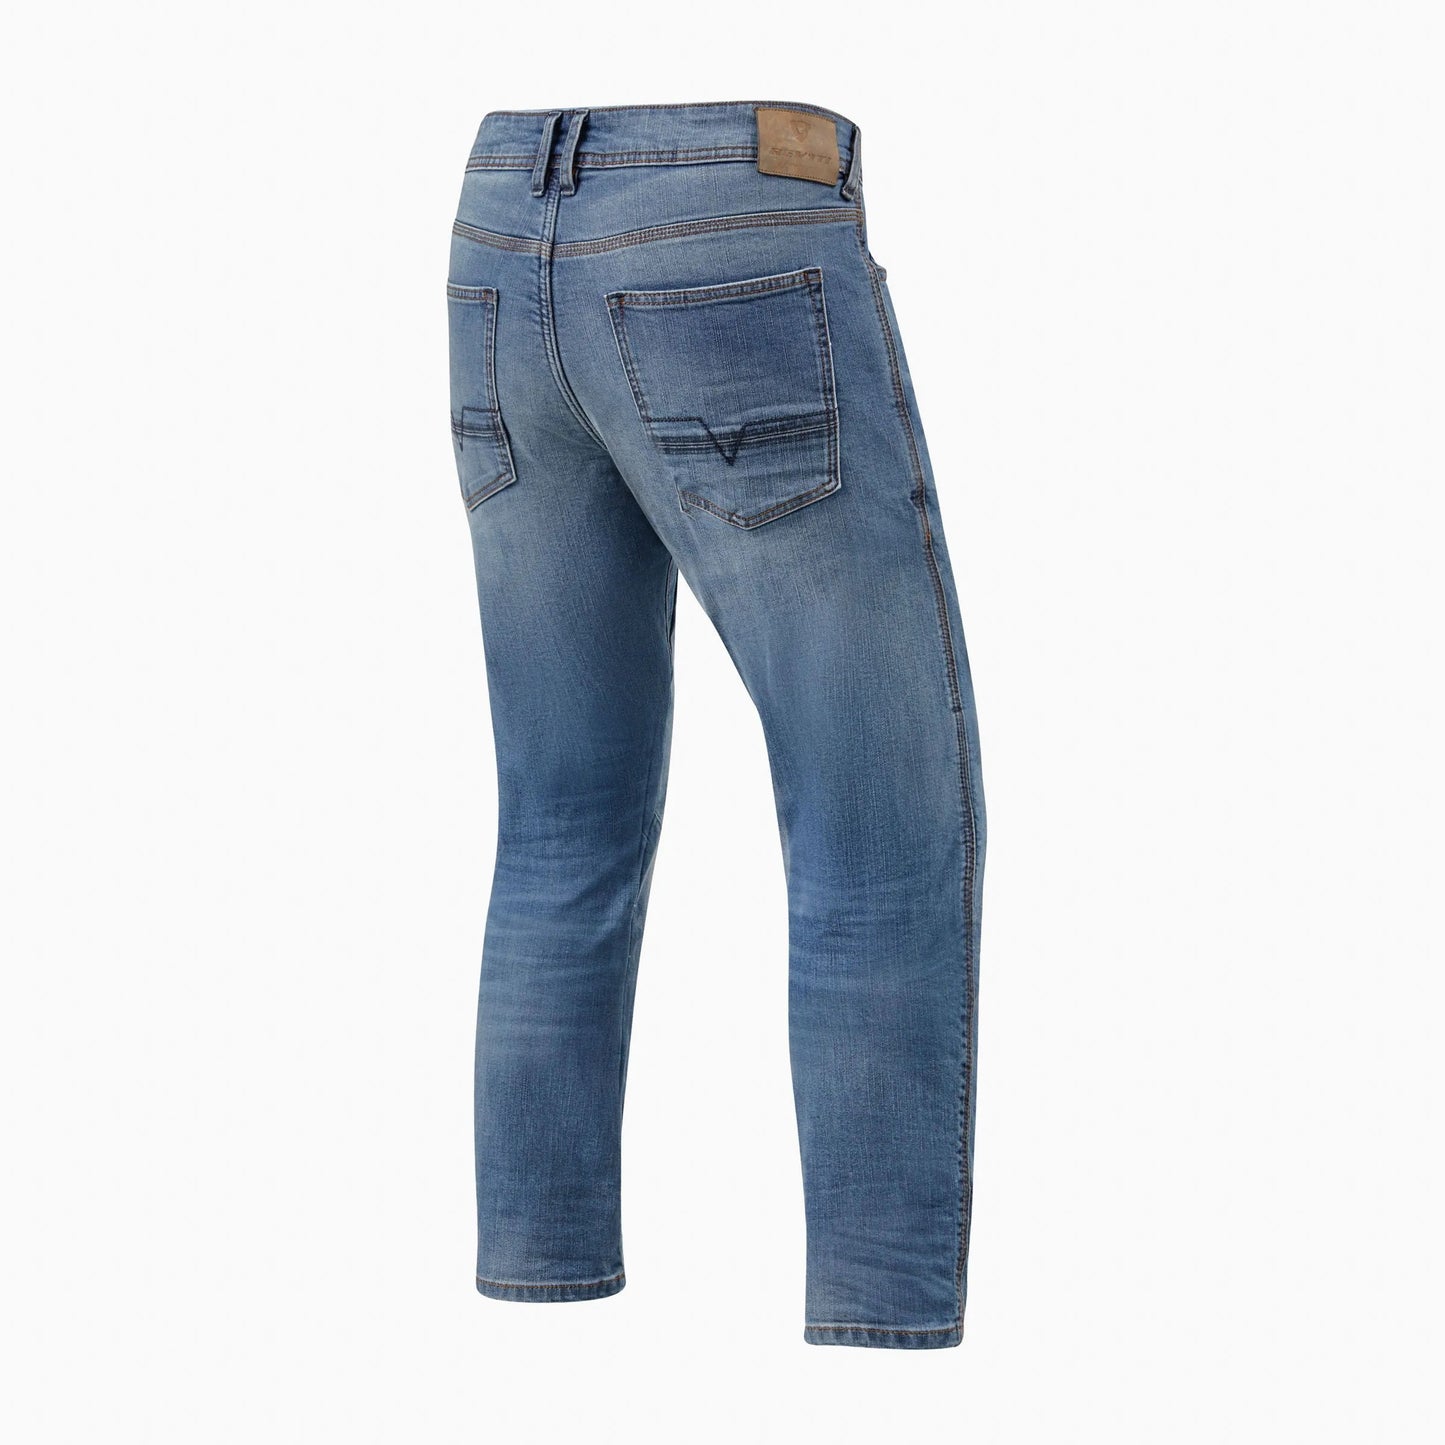 REVIT Jeans Detroit TF Classic Bleu Used